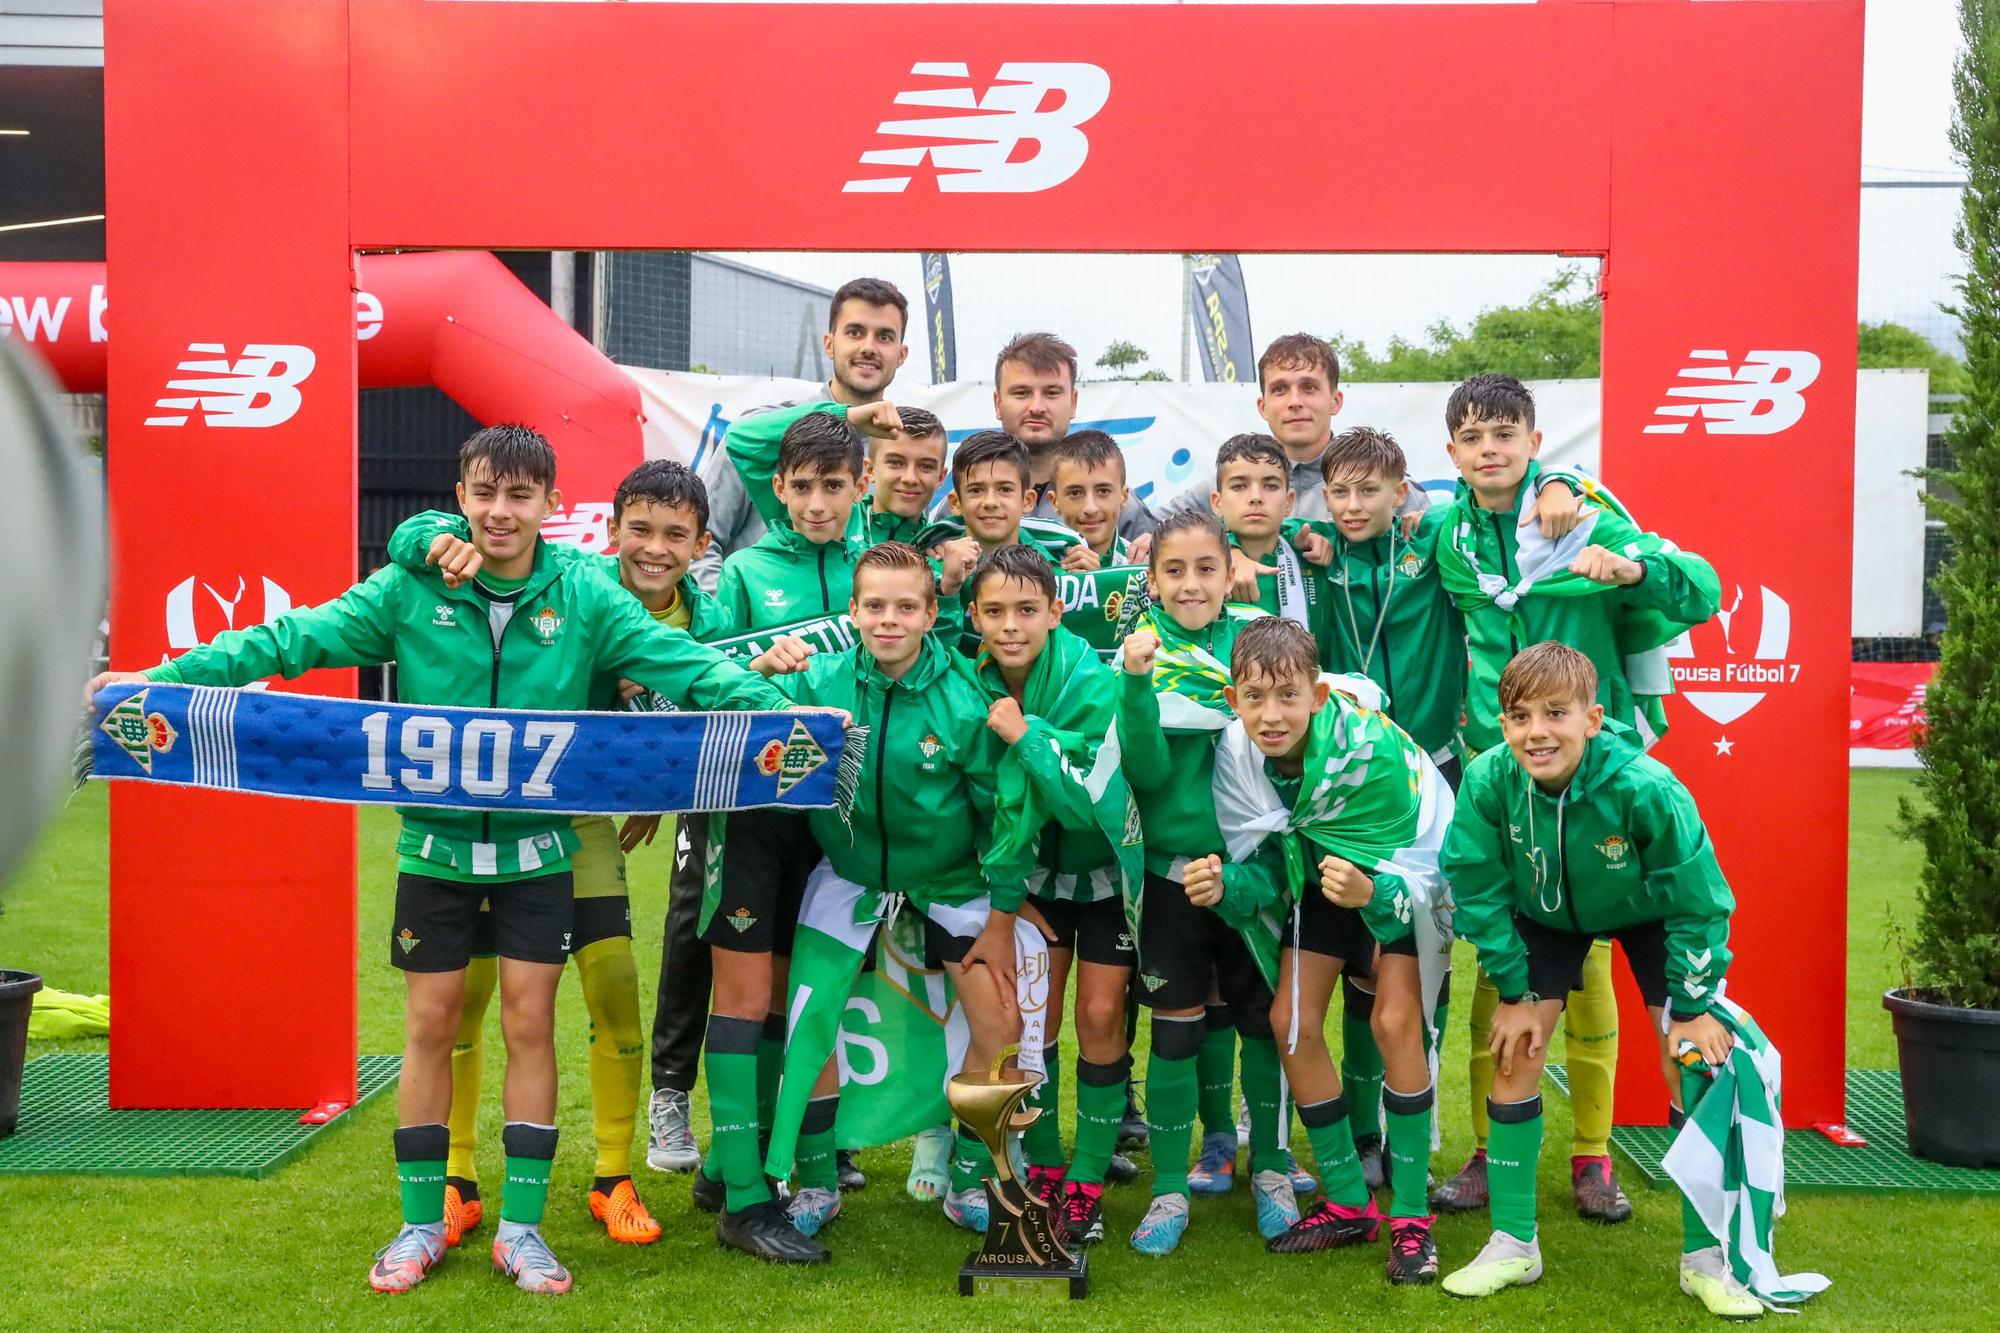 El Real Betis se hace con la corona del Arousa Fútbol 7